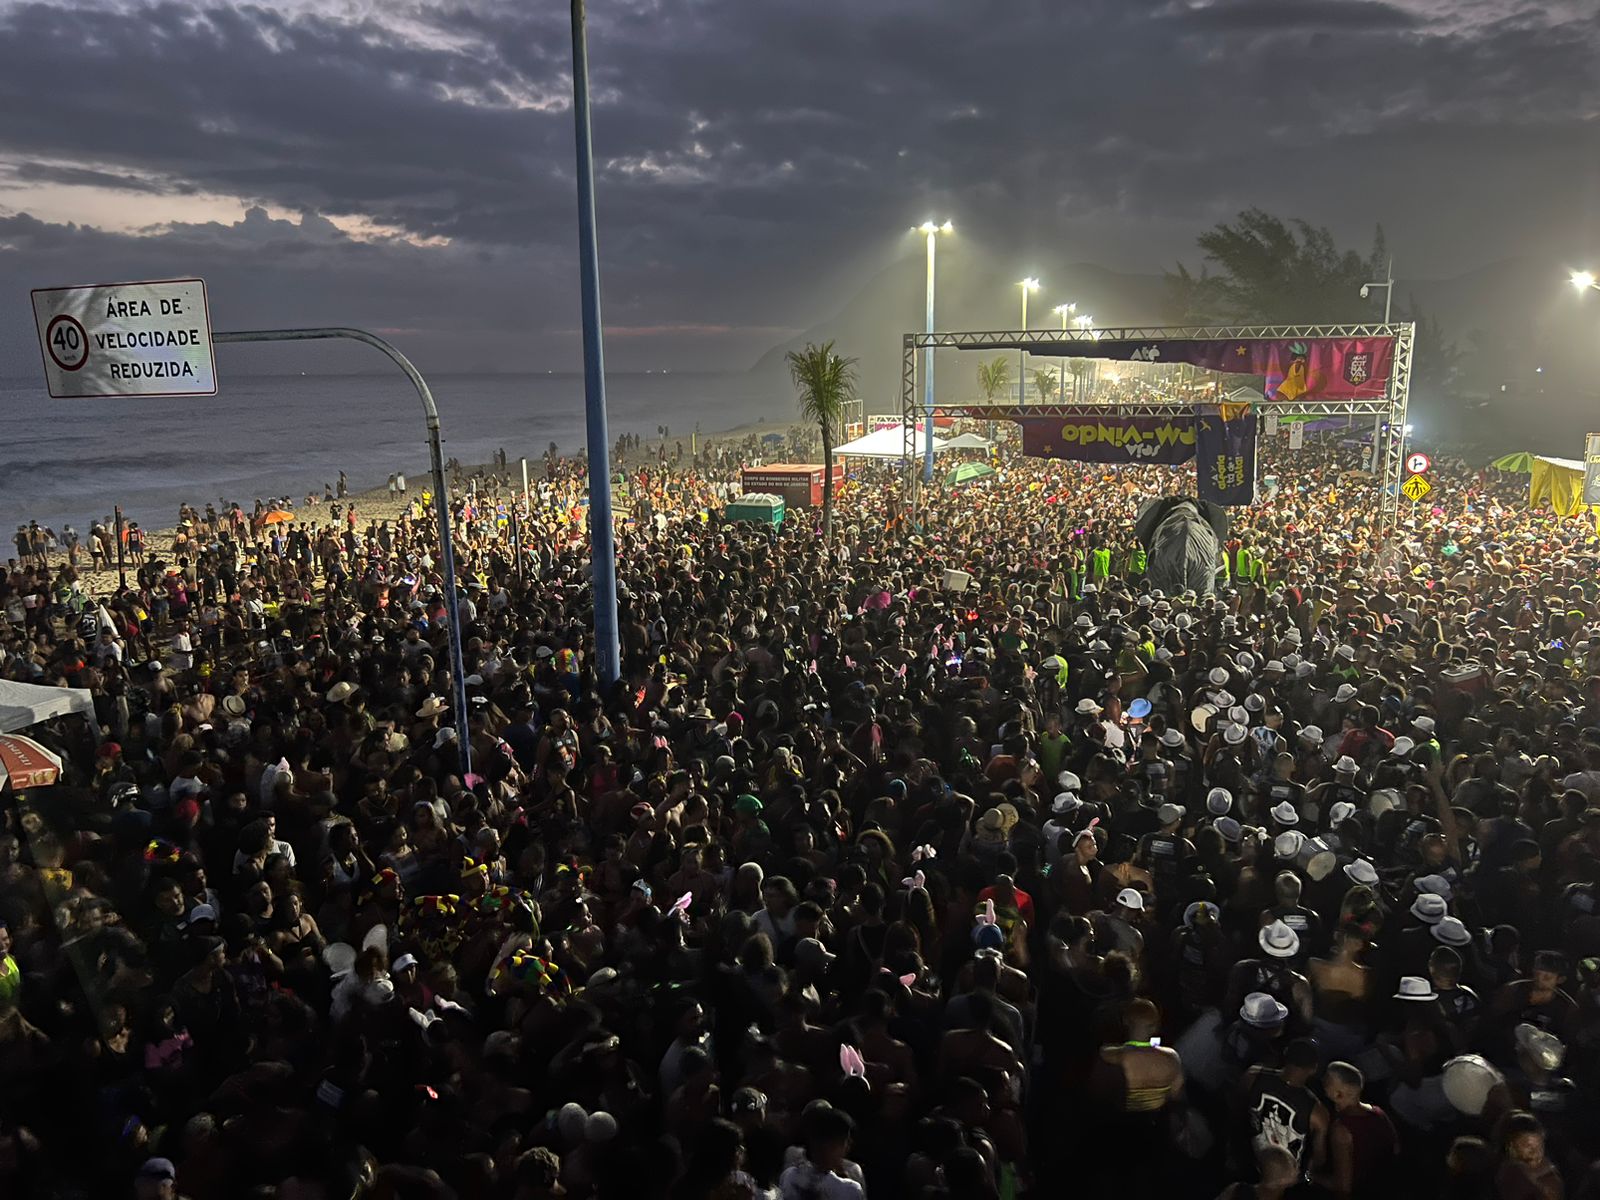 Bloco Tromba Nervosa arrastou multidão no Carnaval 2023 em Itaipuaçu. (foto: Adriano Marçal)